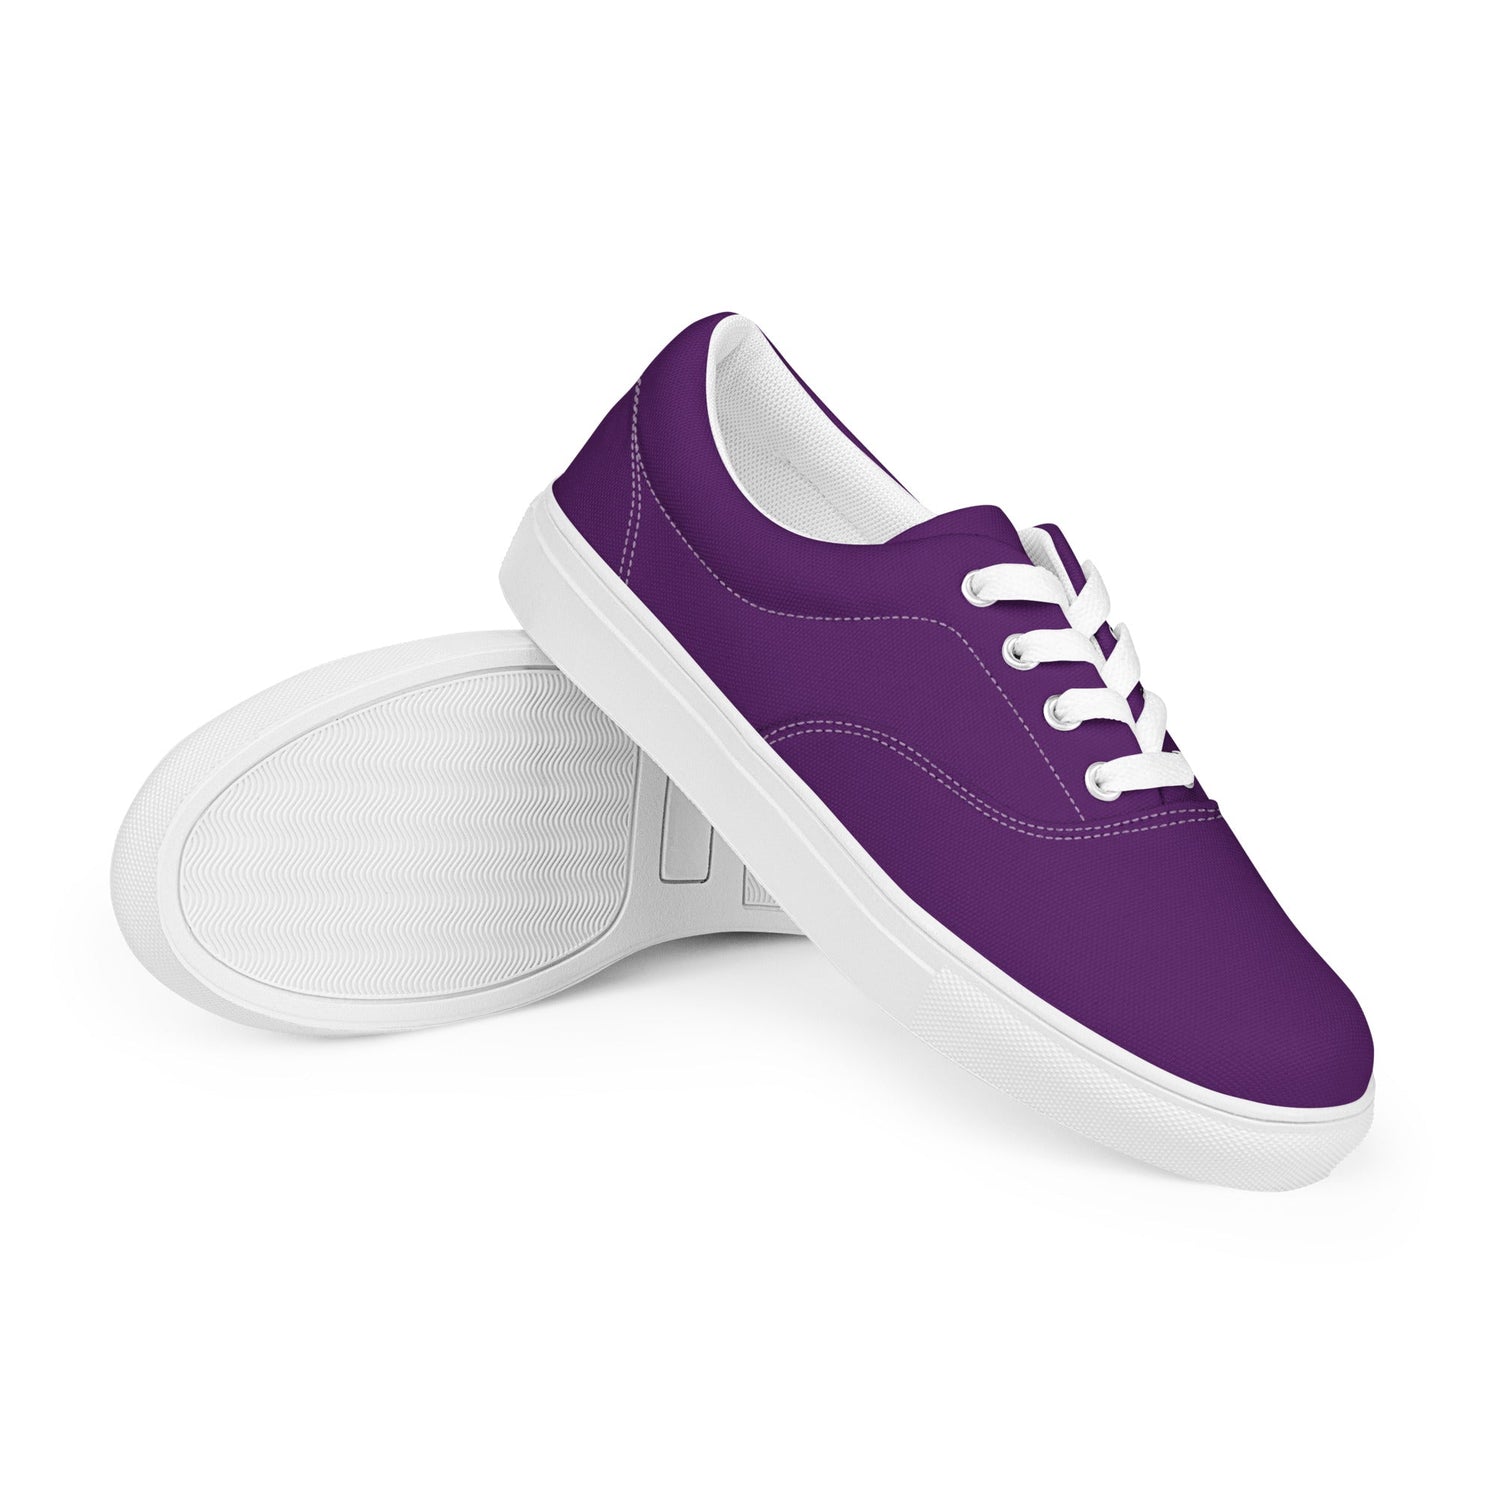 klasneakers Men’s lace-up canvas shoes - Royal Purple